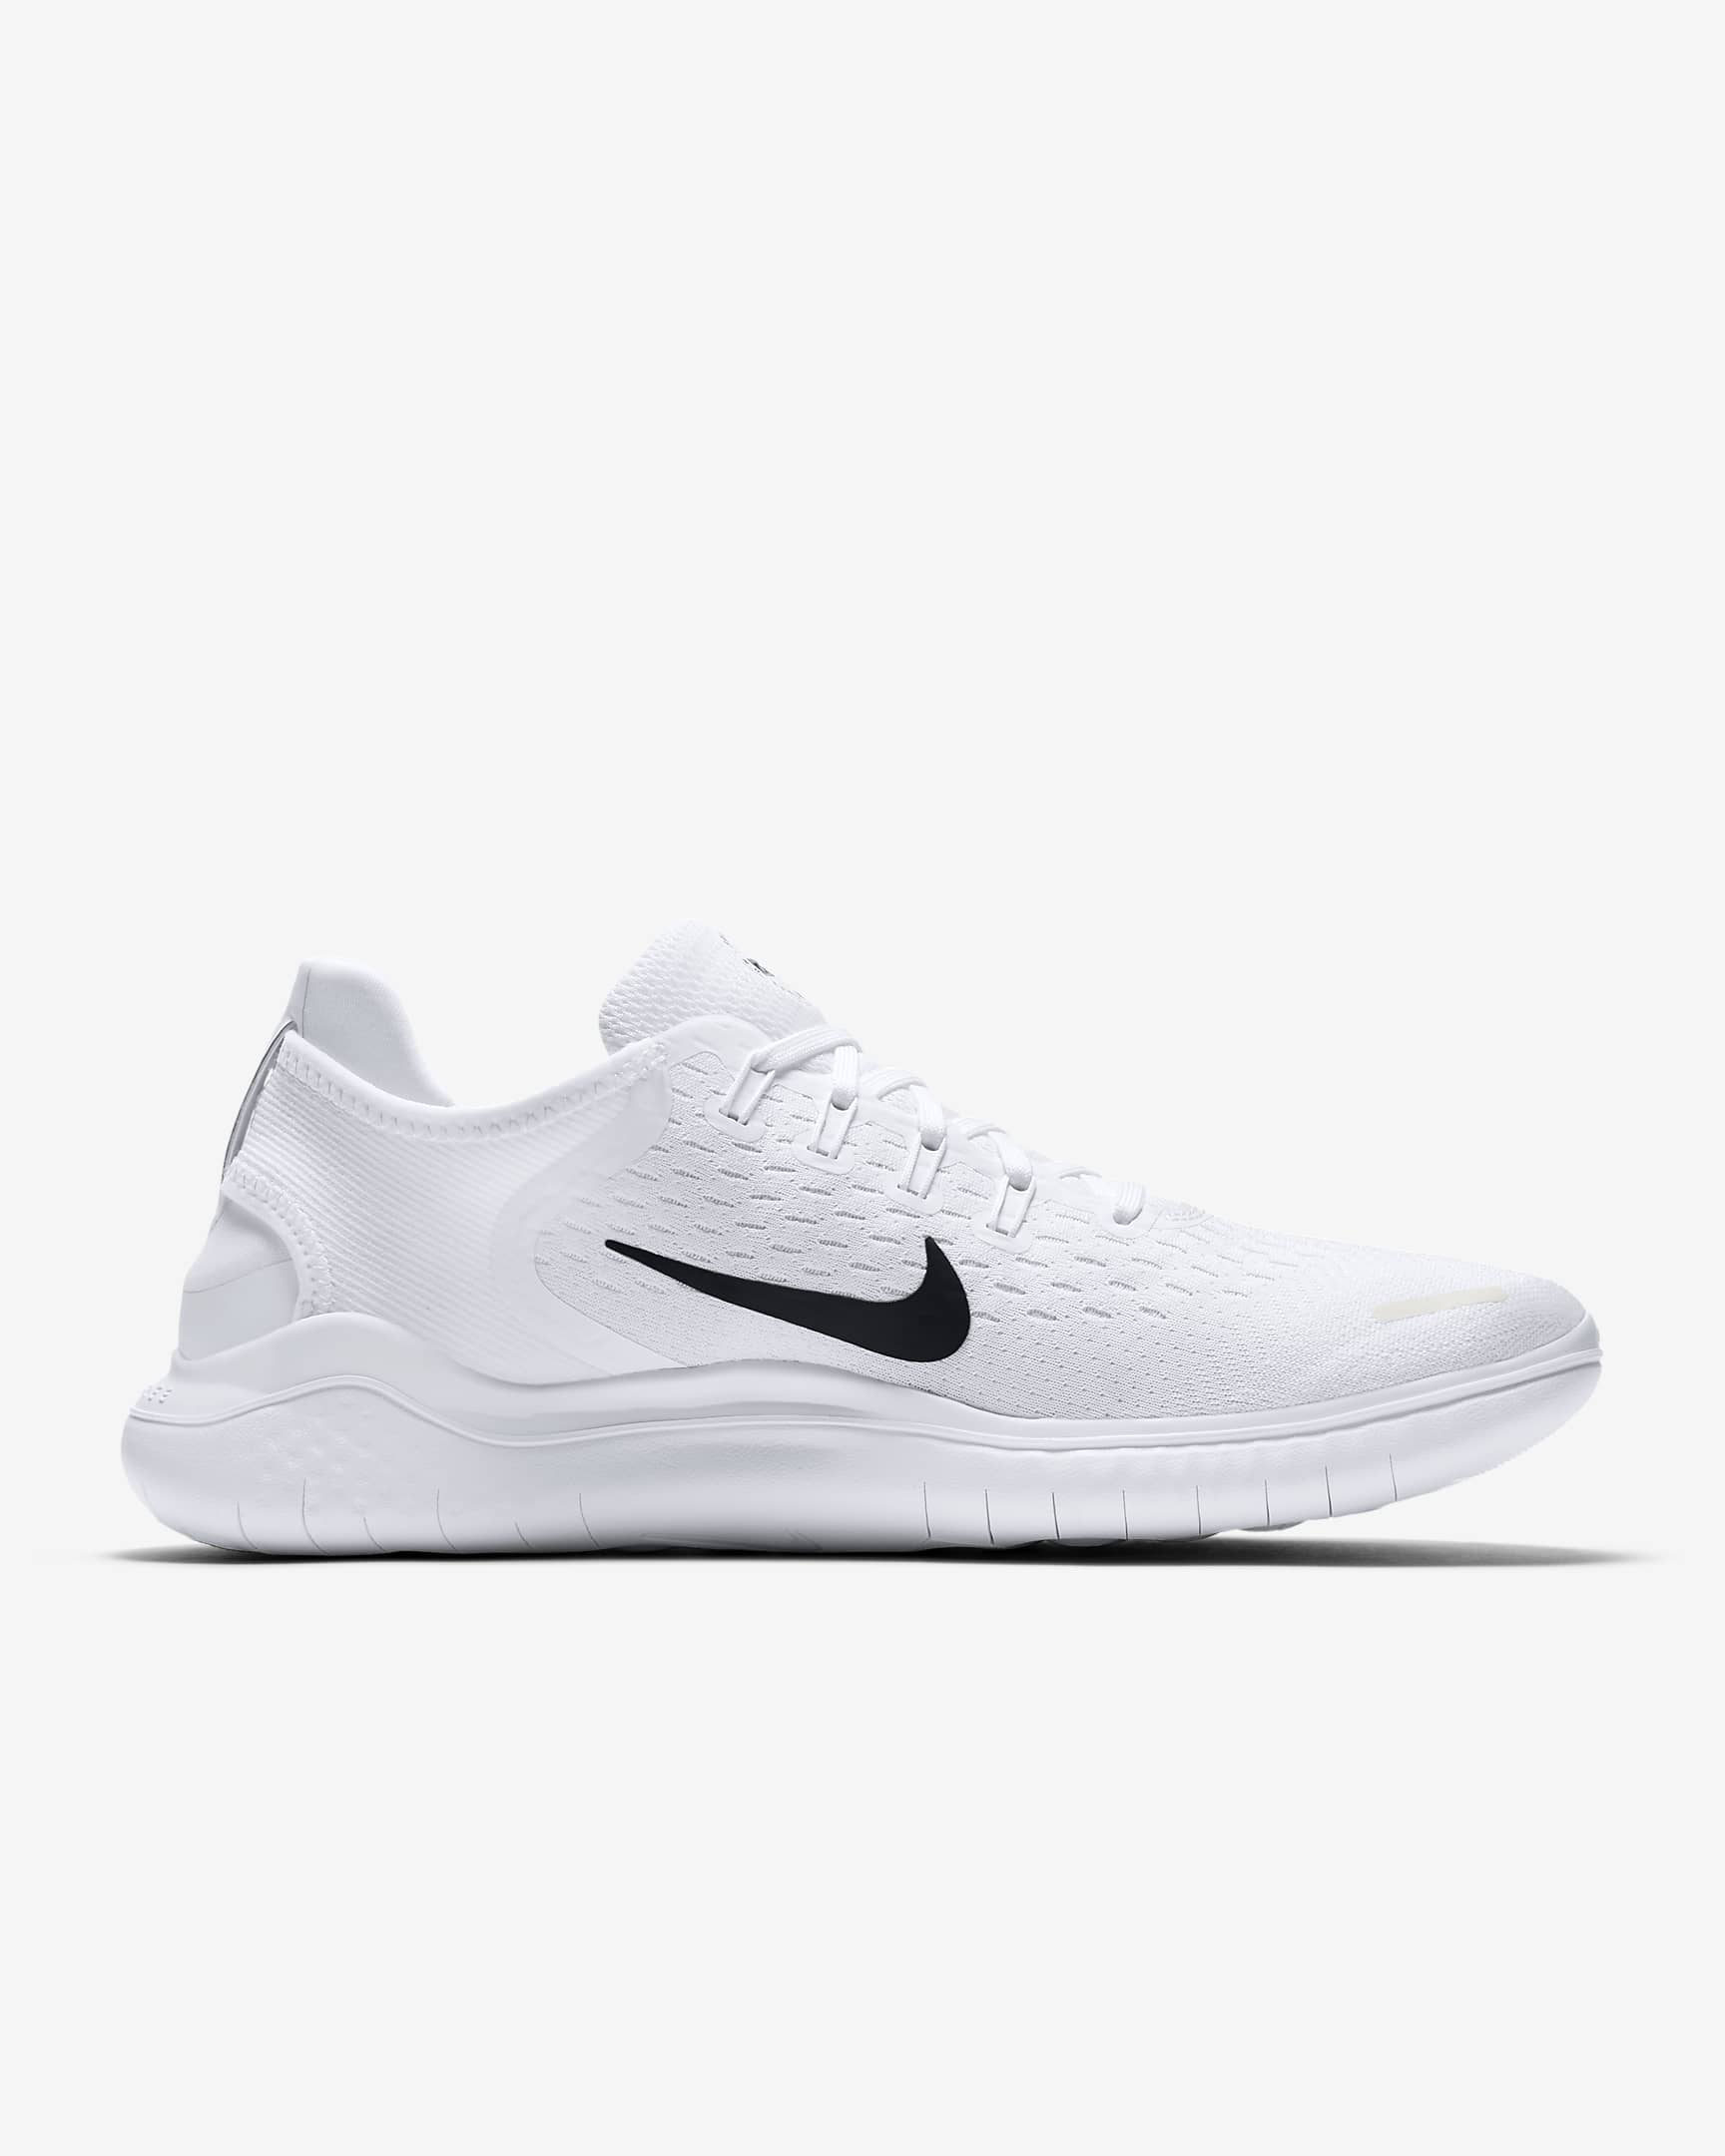 Nike Free Run 2018 Men's Road Running Shoes - White/Black